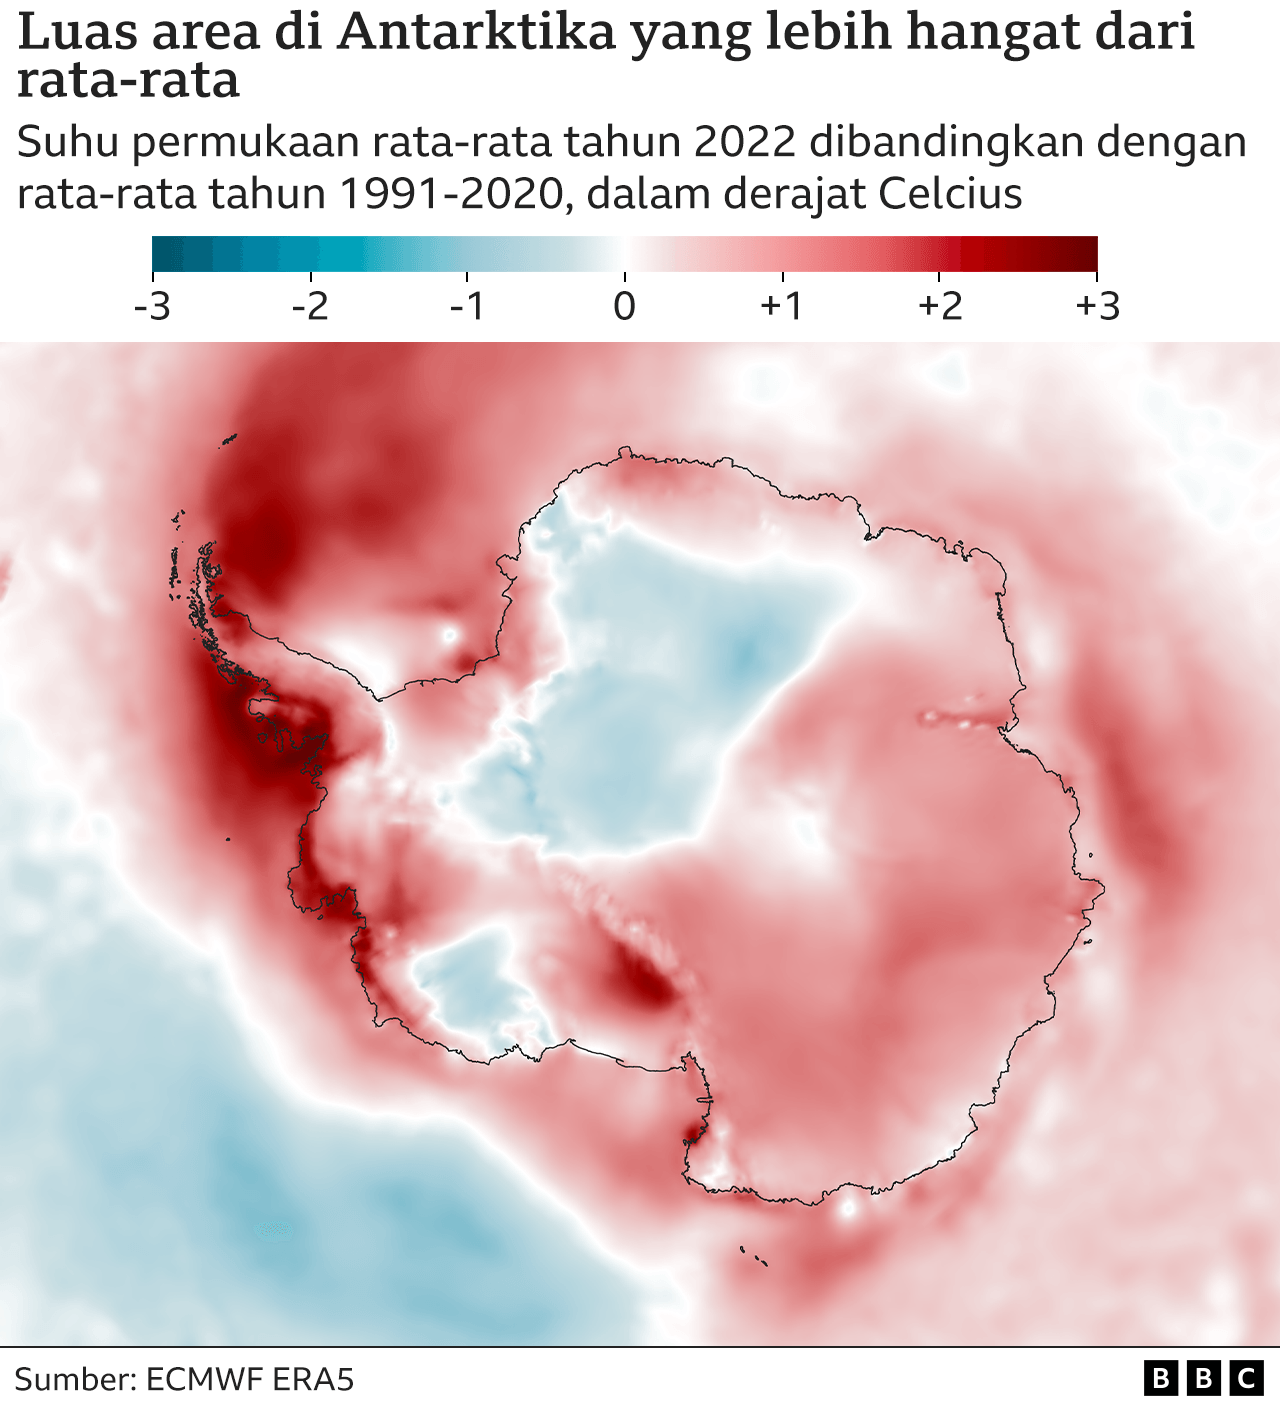 Peta Antartika dengan arsiran warna untuk merepresentasikan perbedaan antara suhu udara permukaan rata-rata pada tahun 2022 dan suhu rata-rata selama periode referensi 1991-2020. Selain dua bercak biru yang lebih dingin, sebagian besar benua berwarna merah -- sekitar 1 derajat di atas rata-rata. Area di atas semenanjung berwarna merah tua, hingga 3 derajat di atas rata-rata.